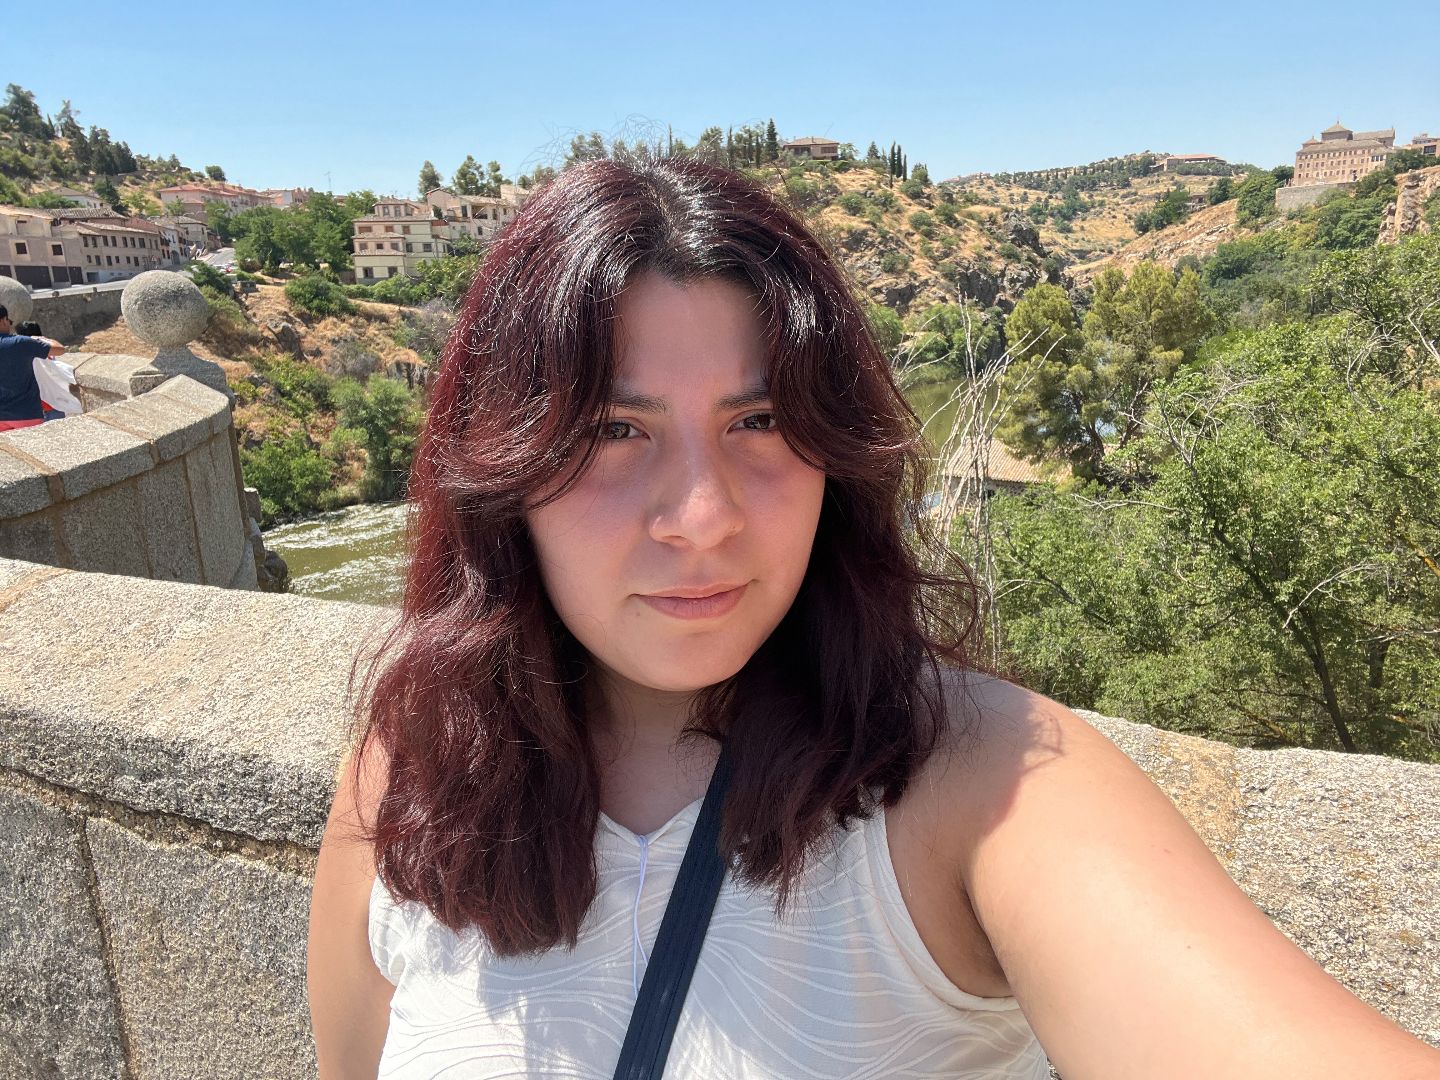 Celeste taking a selfie on bridge in Spain